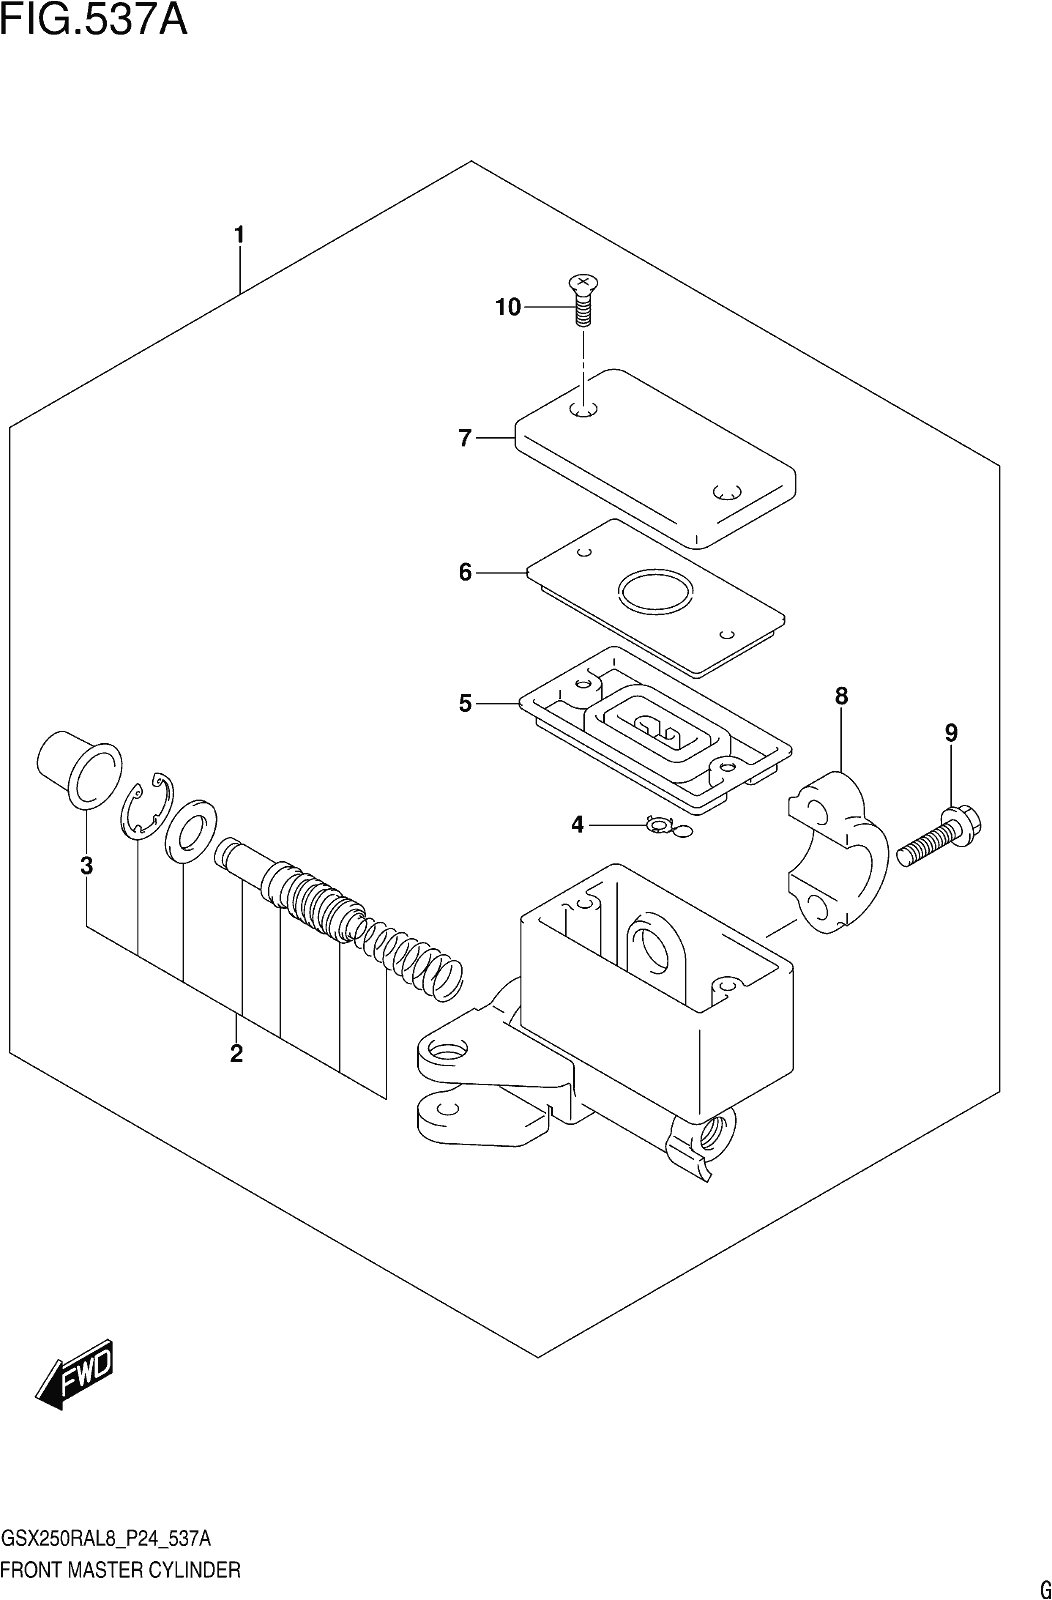 Fig.537a Front Master Cylinder